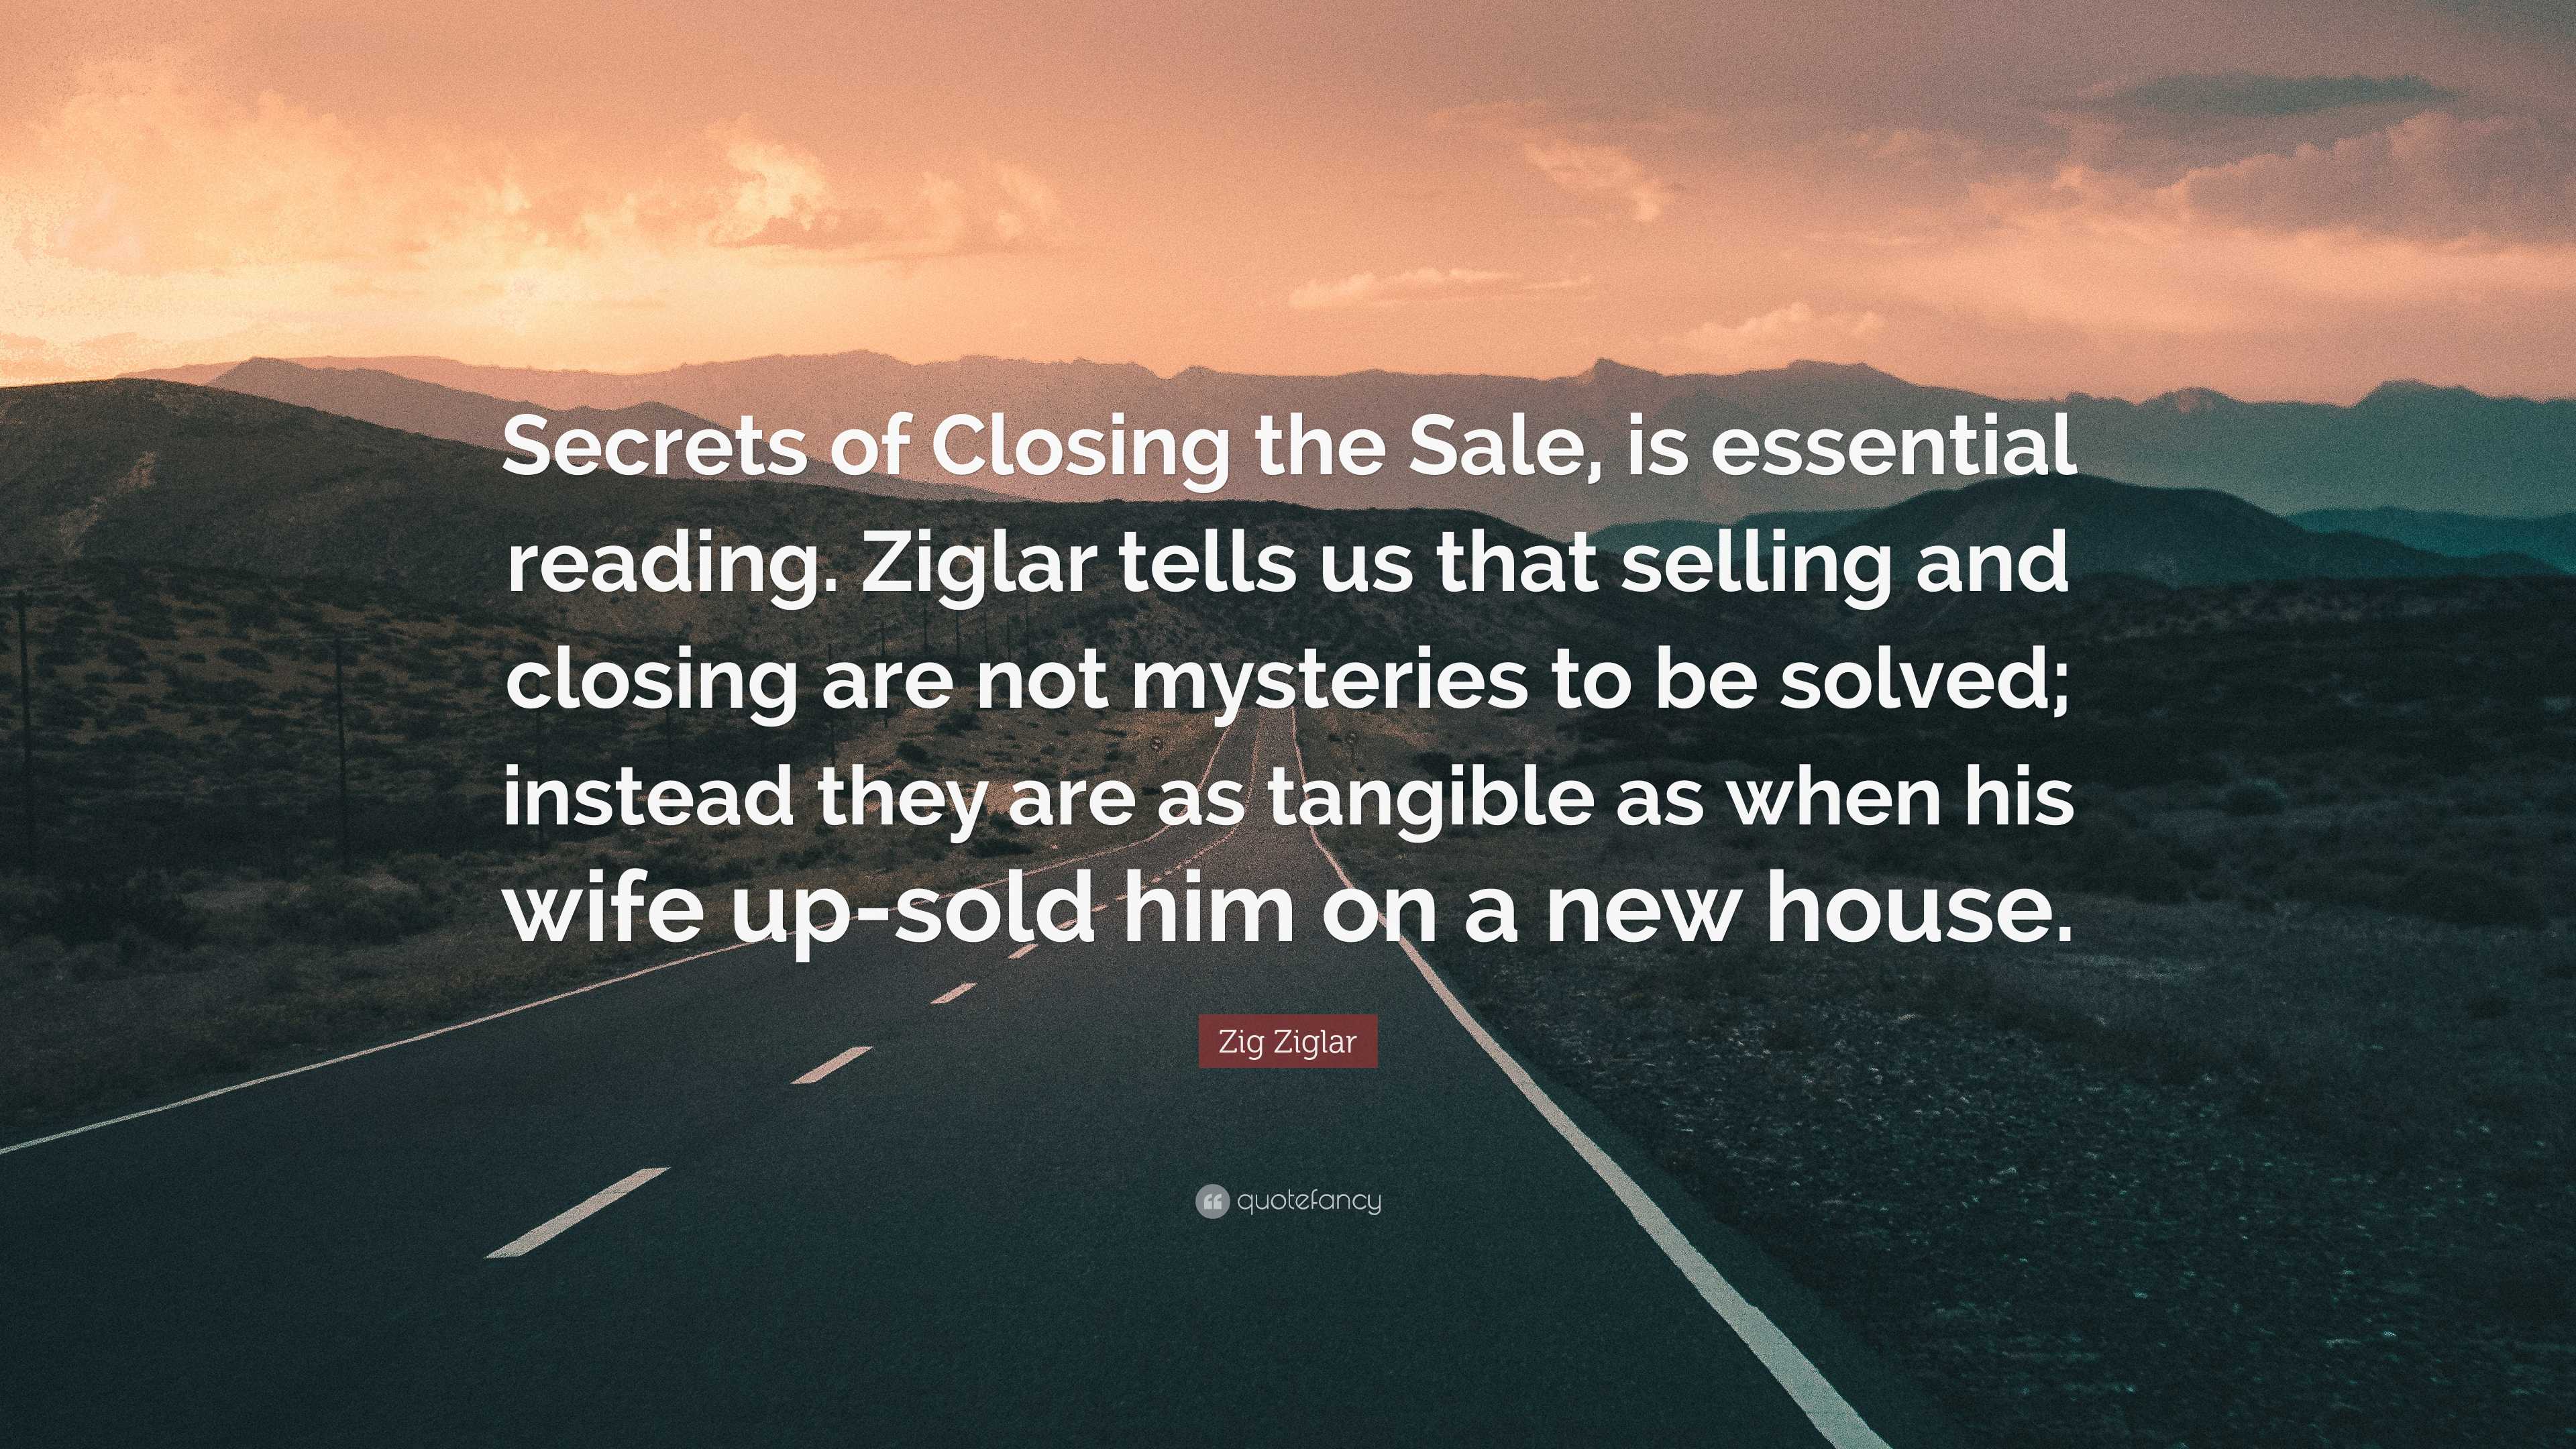 Zig Ziglar Quote: “Secrets of Closing the Sale, is essential